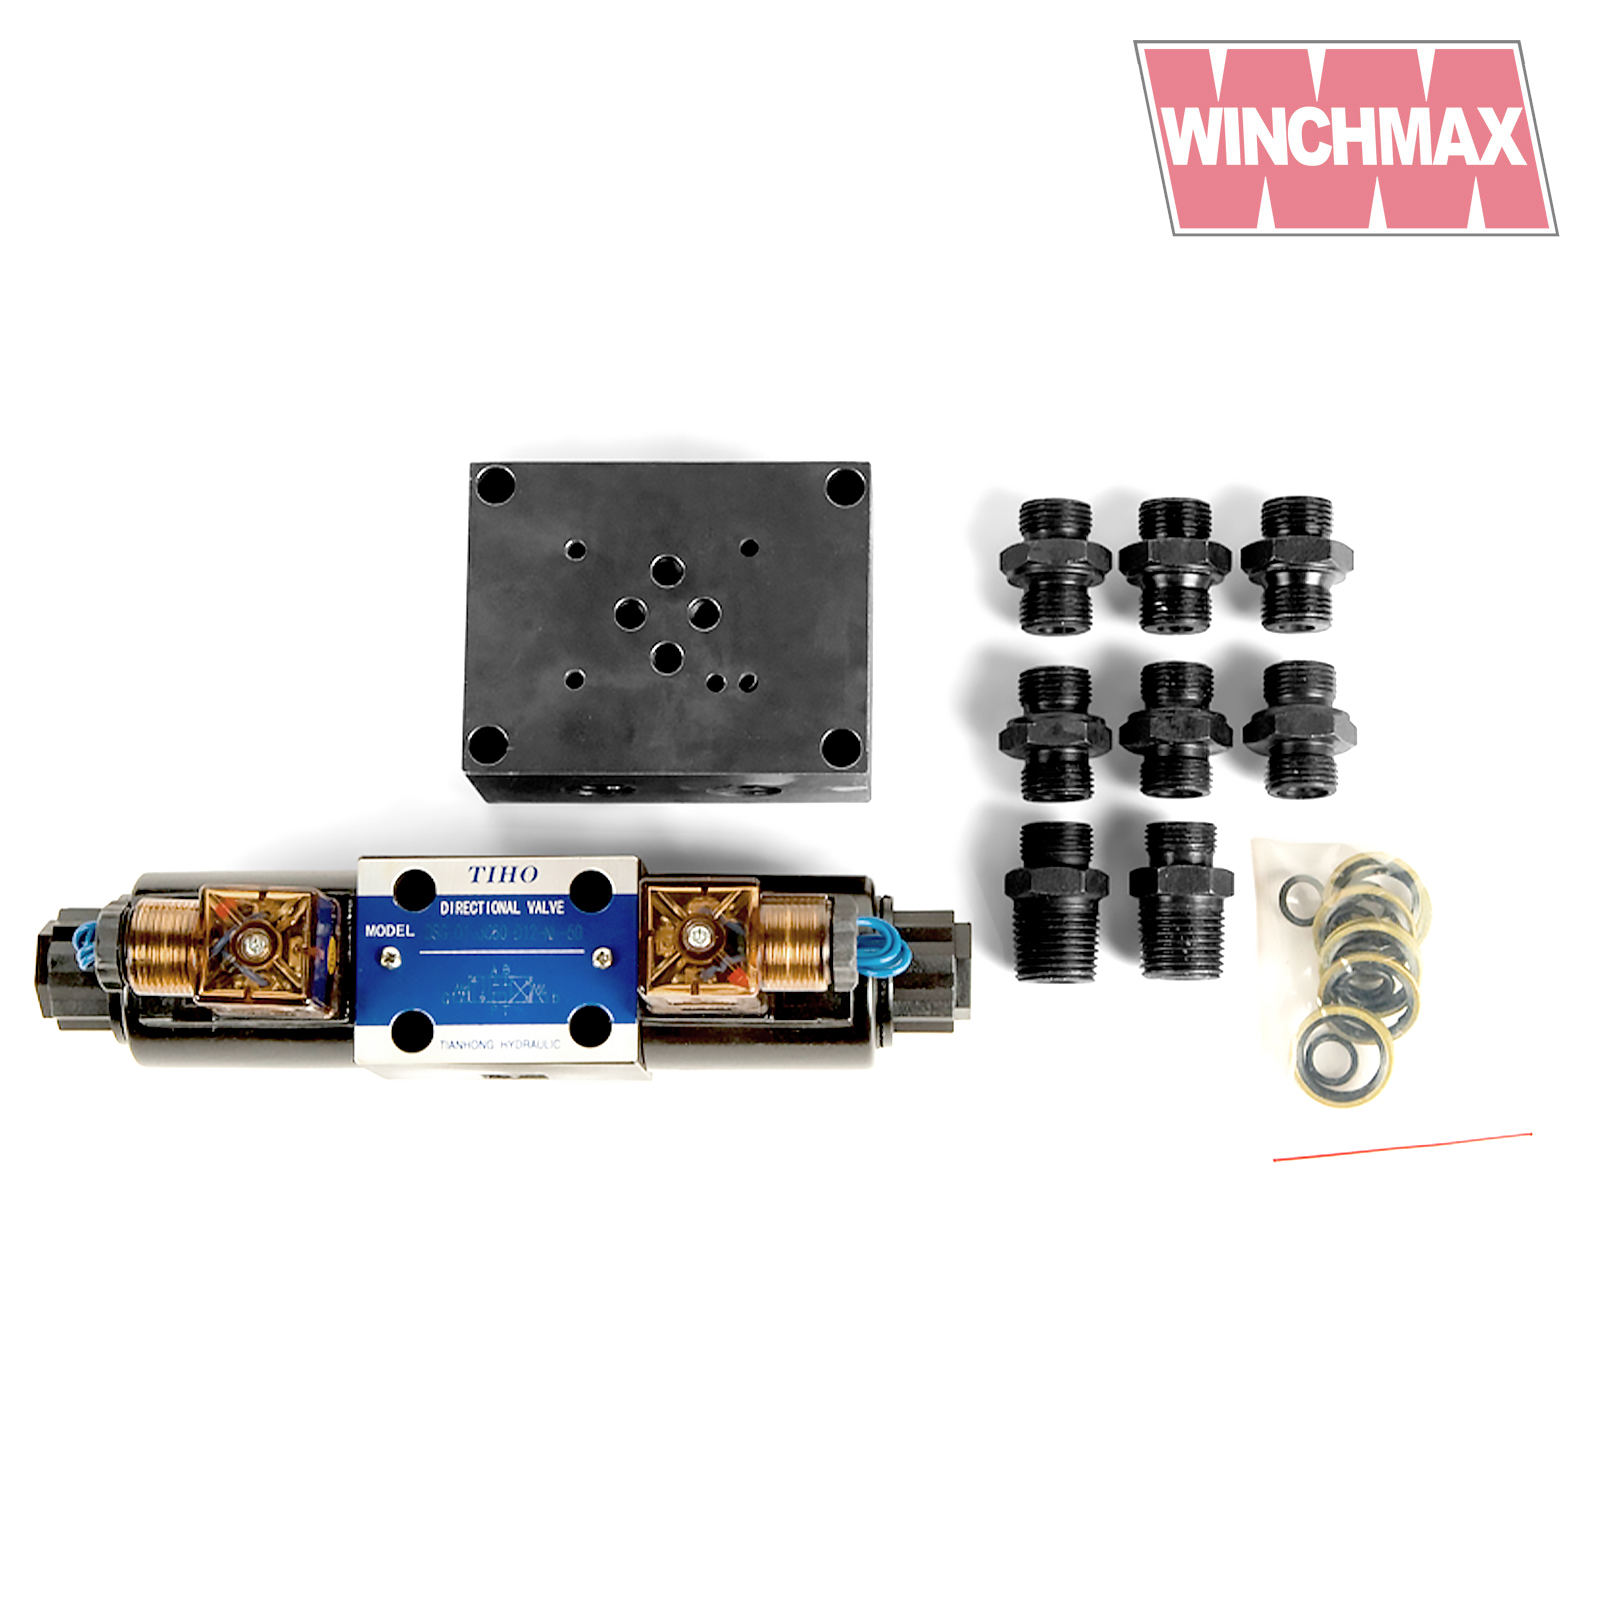 Winchmax 2000lb Hydraulic Winch and Control System